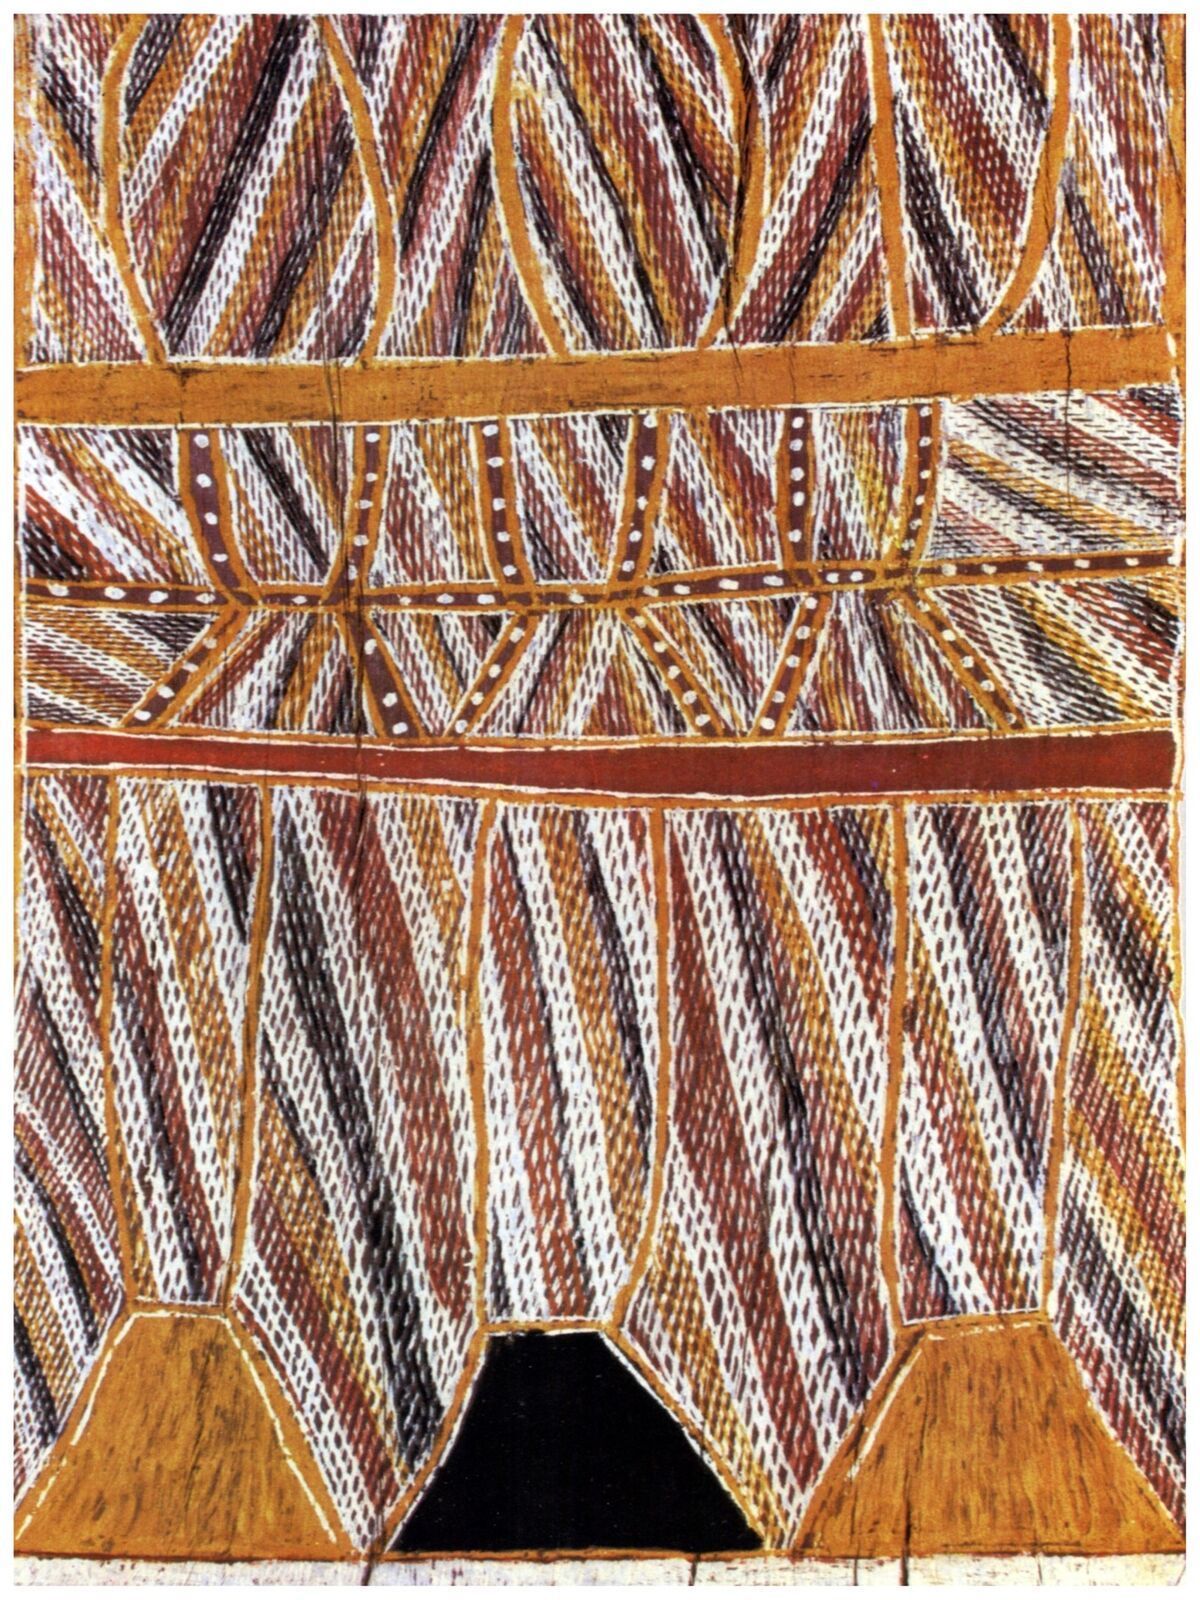 Primary image for 3752.Aboriginal american native textile 18x24 Poster.Home interior design decor 